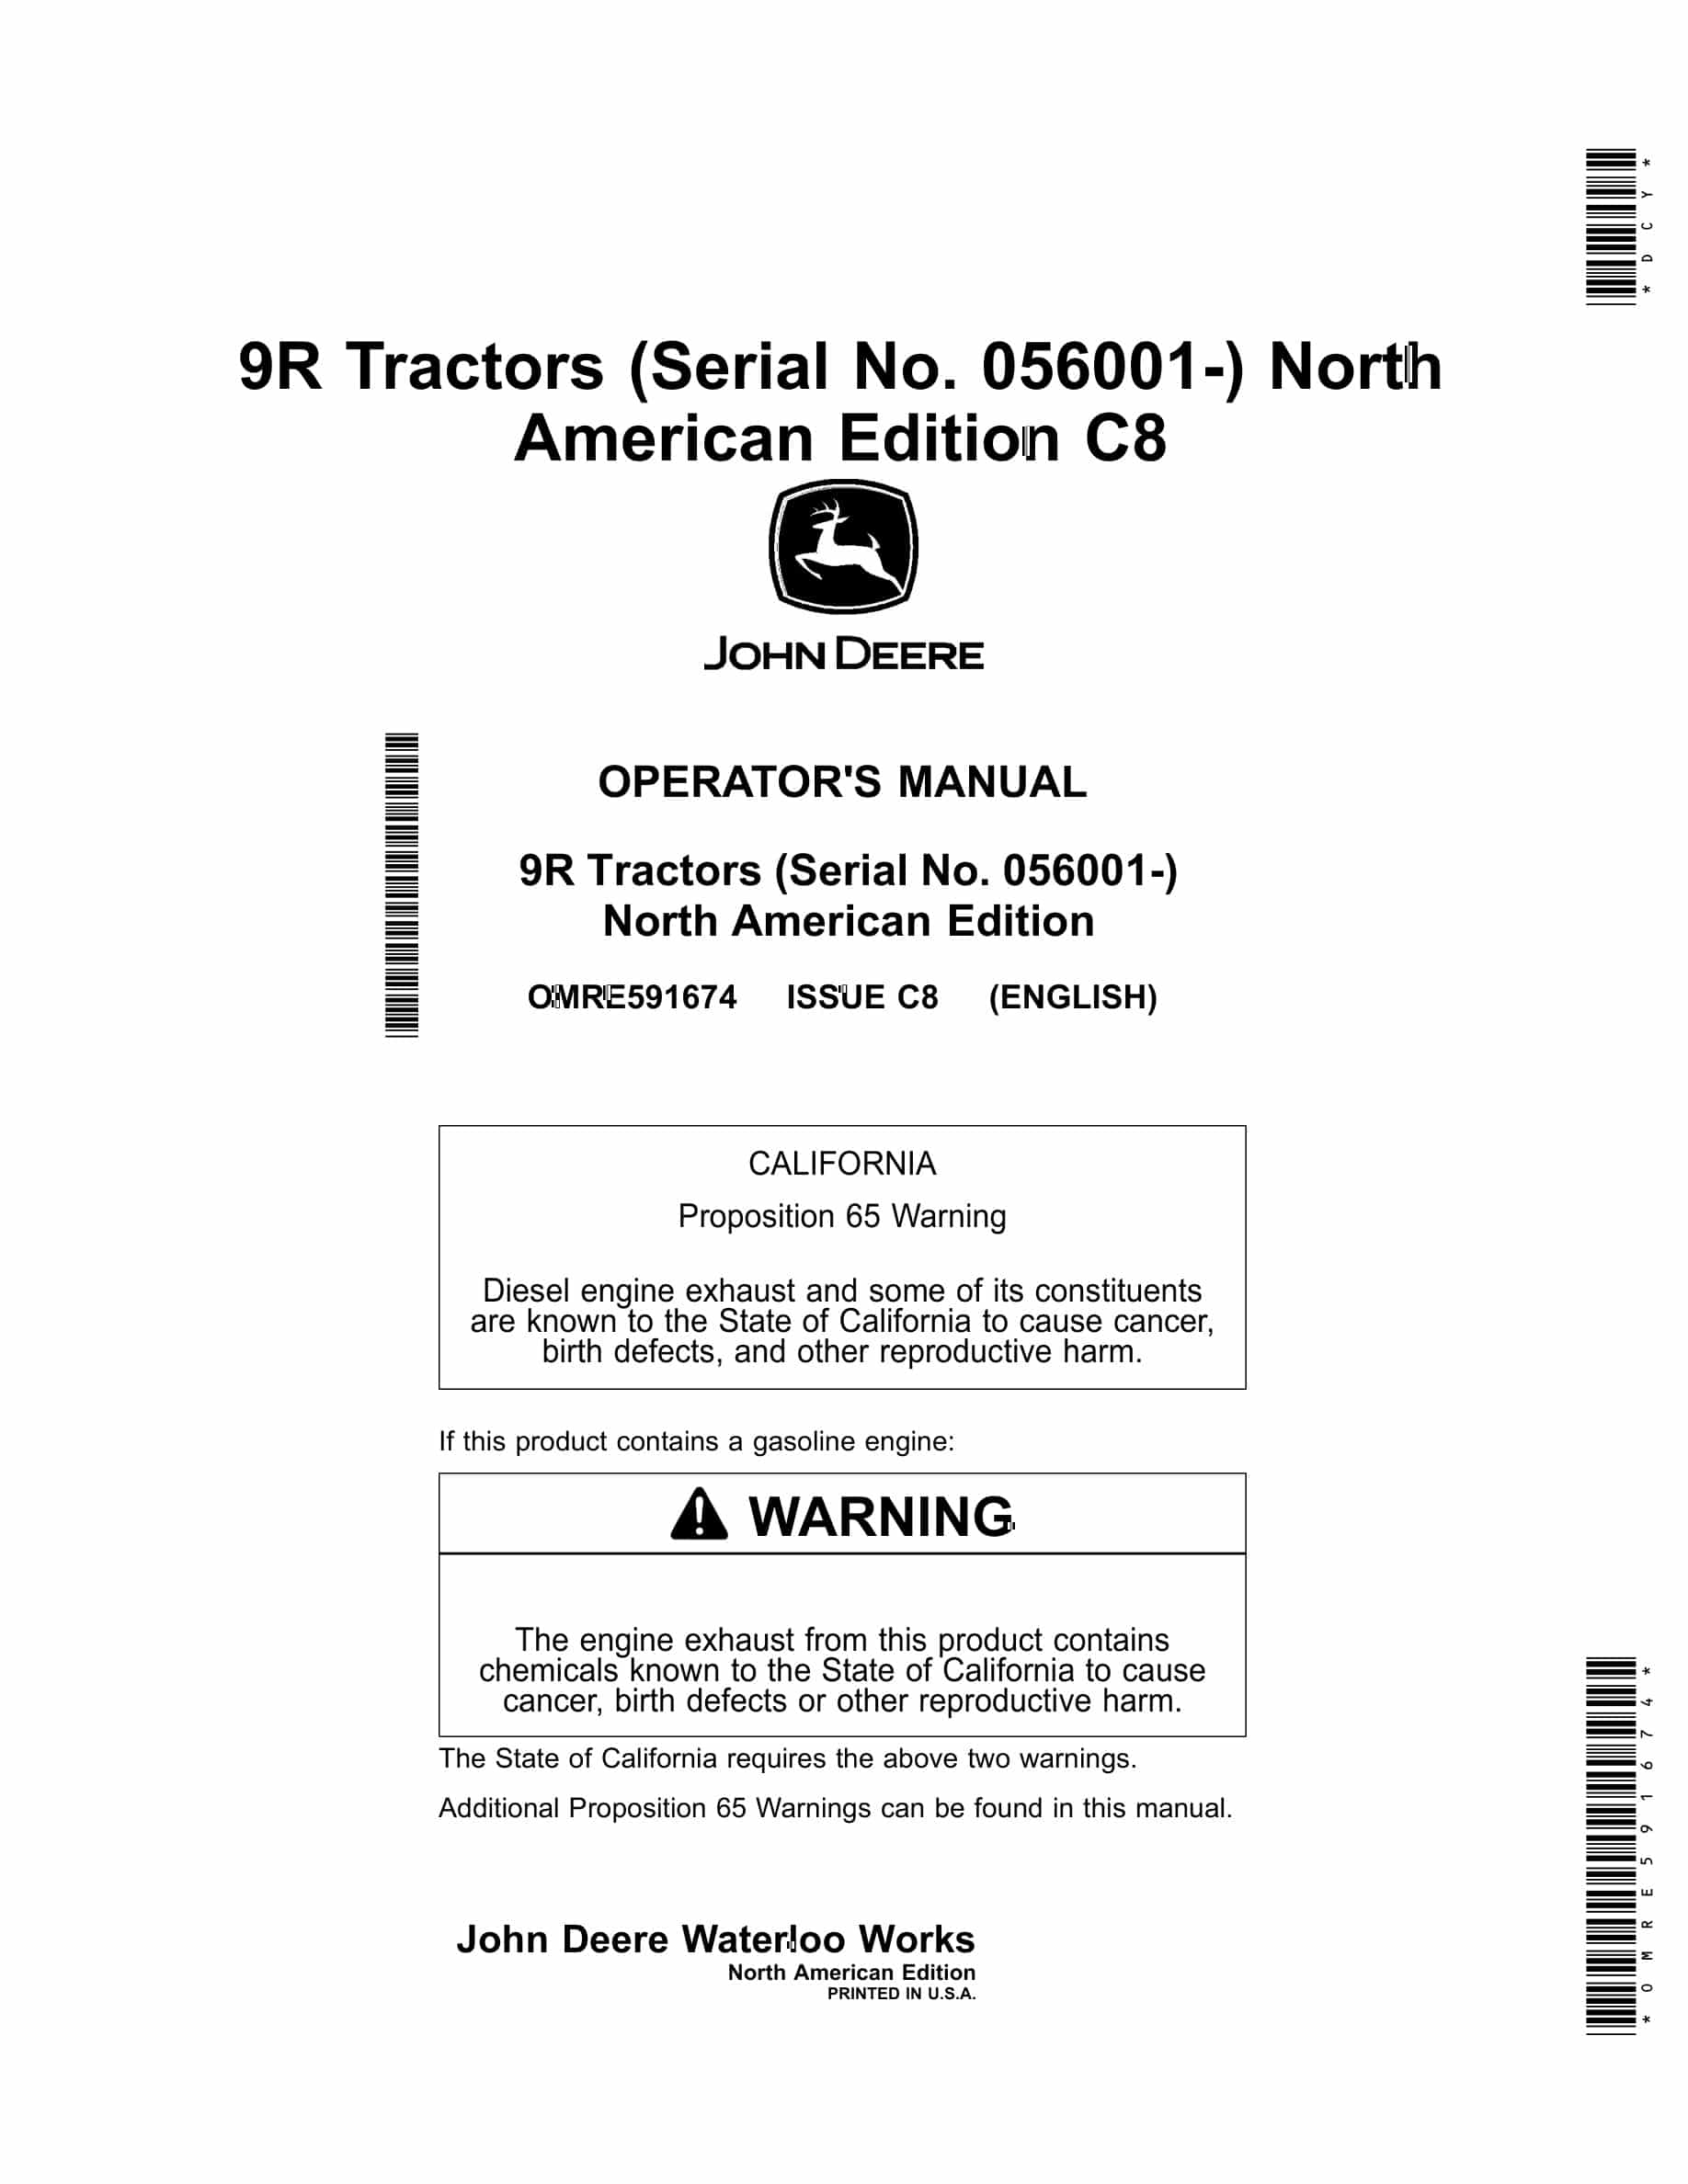 John Deere 9R Tractor Operator Manual OMRE591674-1